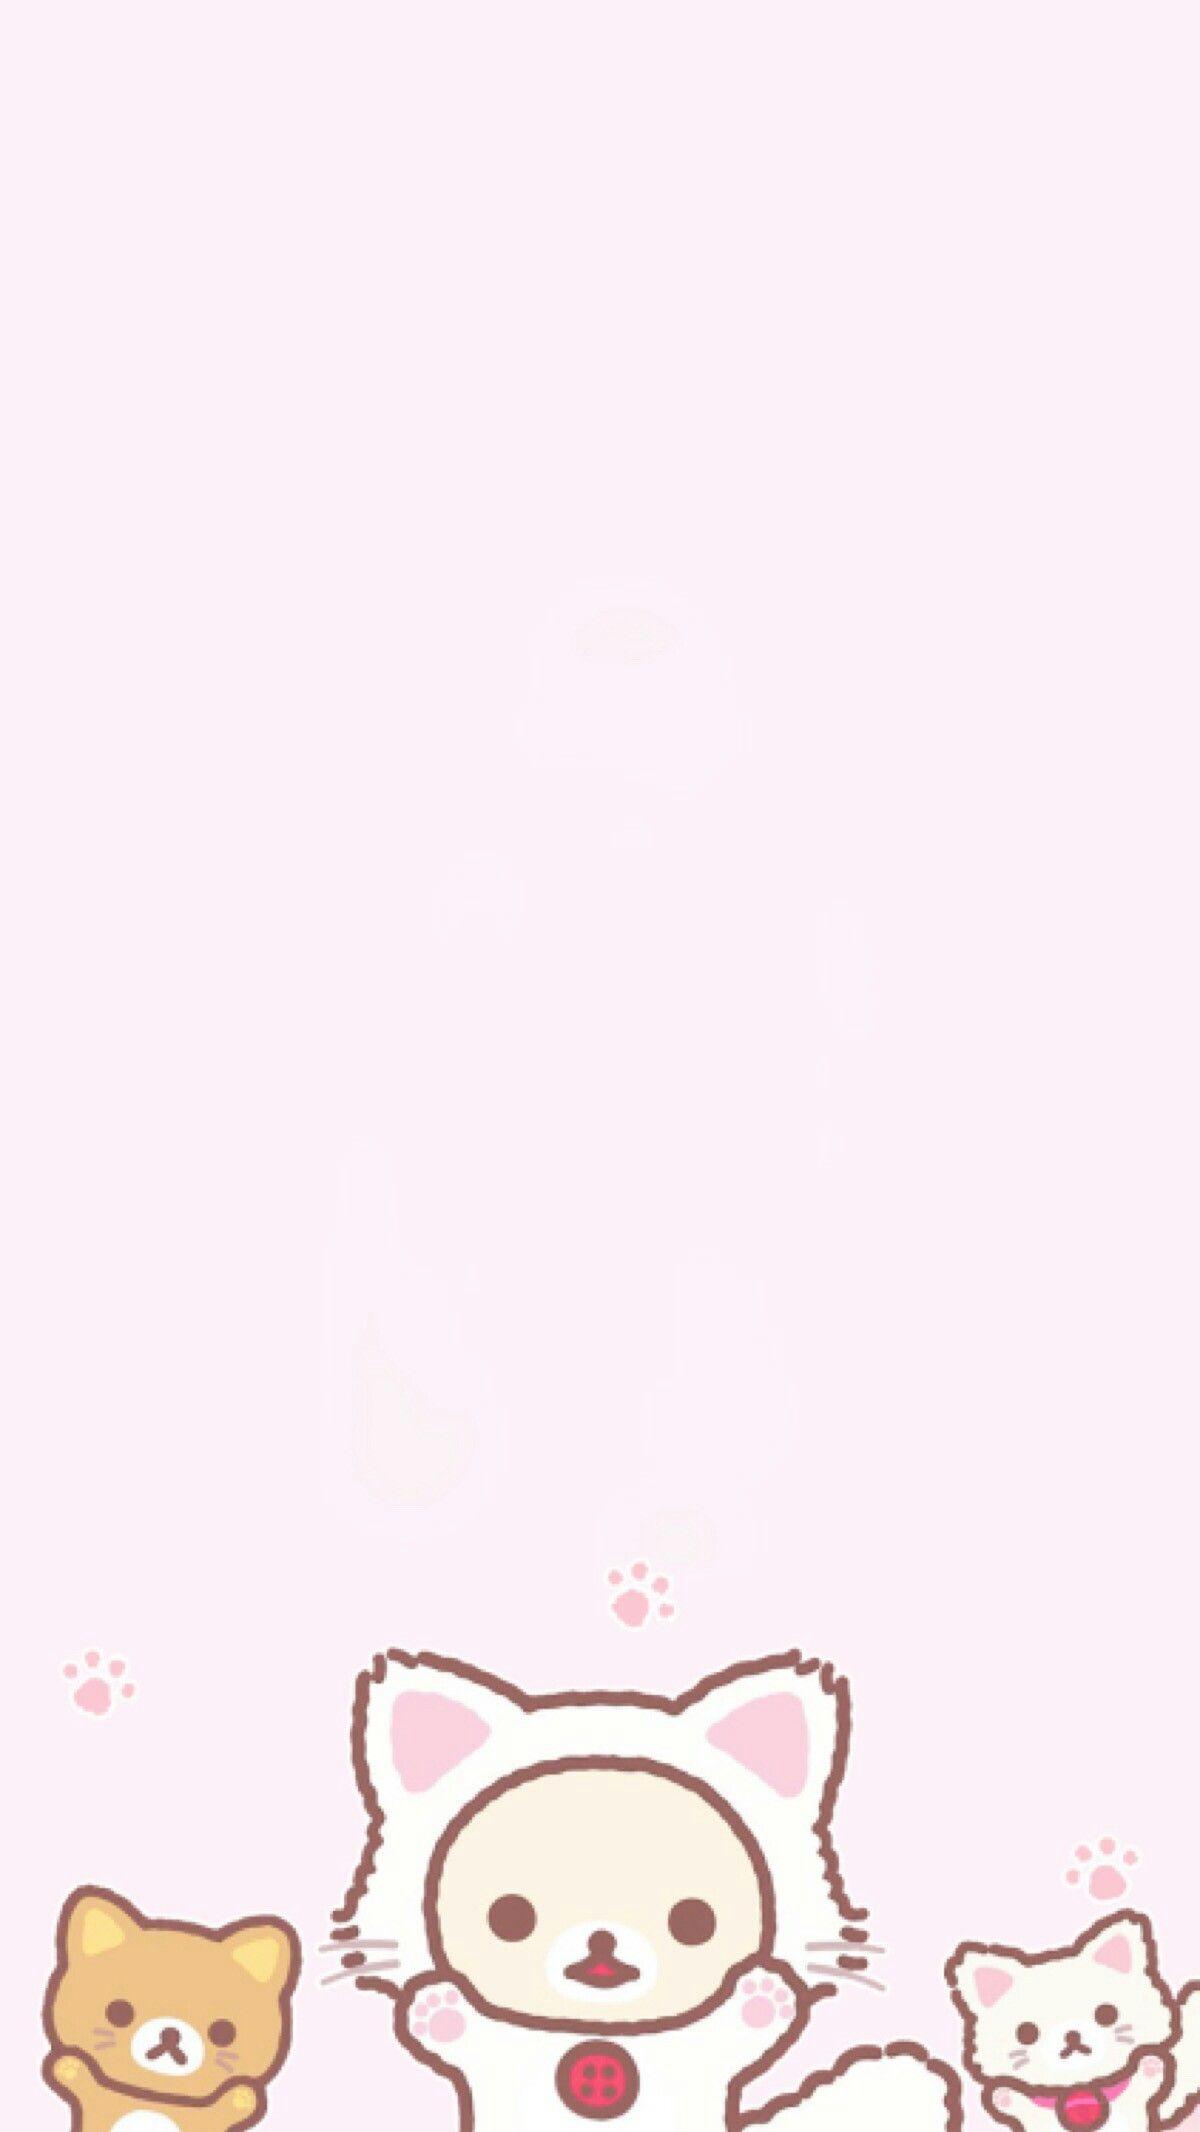 Rilakkuma Cat Wallpapers - Top Free Rilakkuma Cat Backgrounds ...